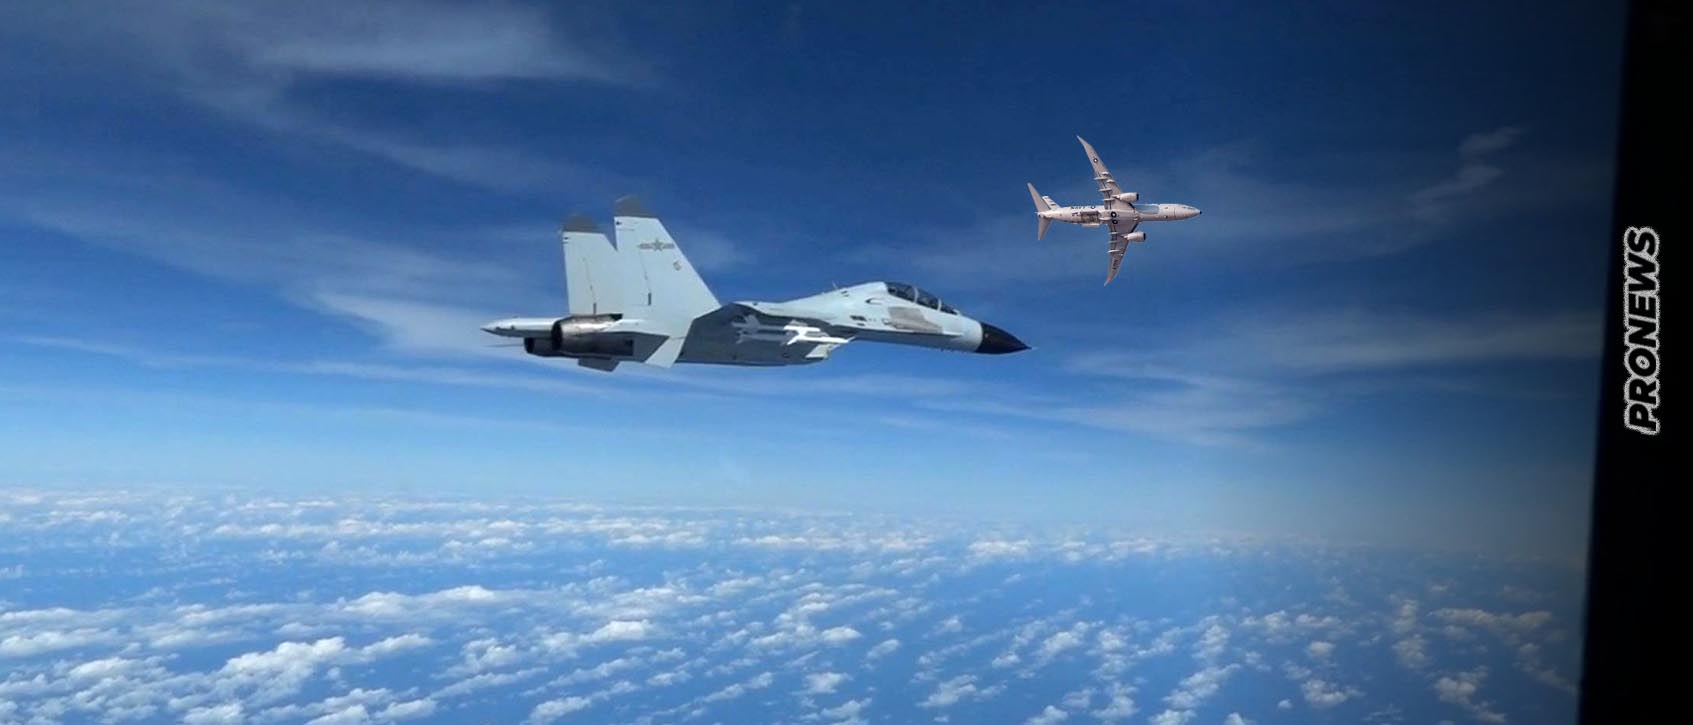 Κλιμακώνονται οι σχέσεις ΗΠΑ-Κίνας: Kινεζικό J-11 αναχαίτισε αμερικανικό P-8A Poseidon – Πλησίασε σε απόσταση 150 μέτρων!